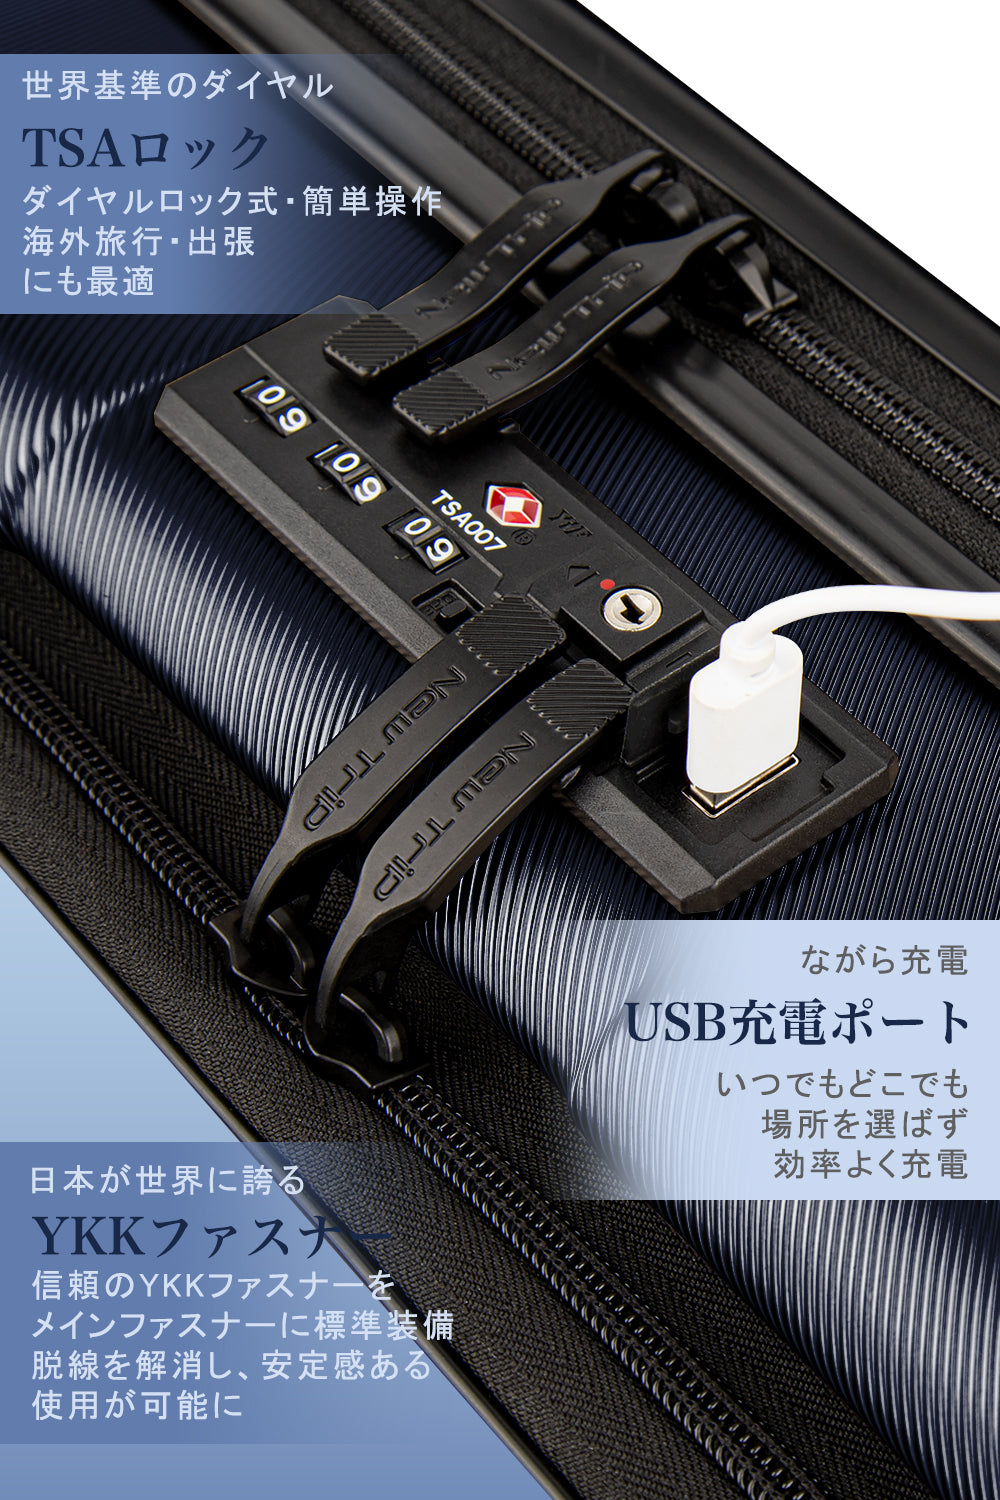 New Trip] スーツケース フロントオープン 機内持ち込み ストッパー